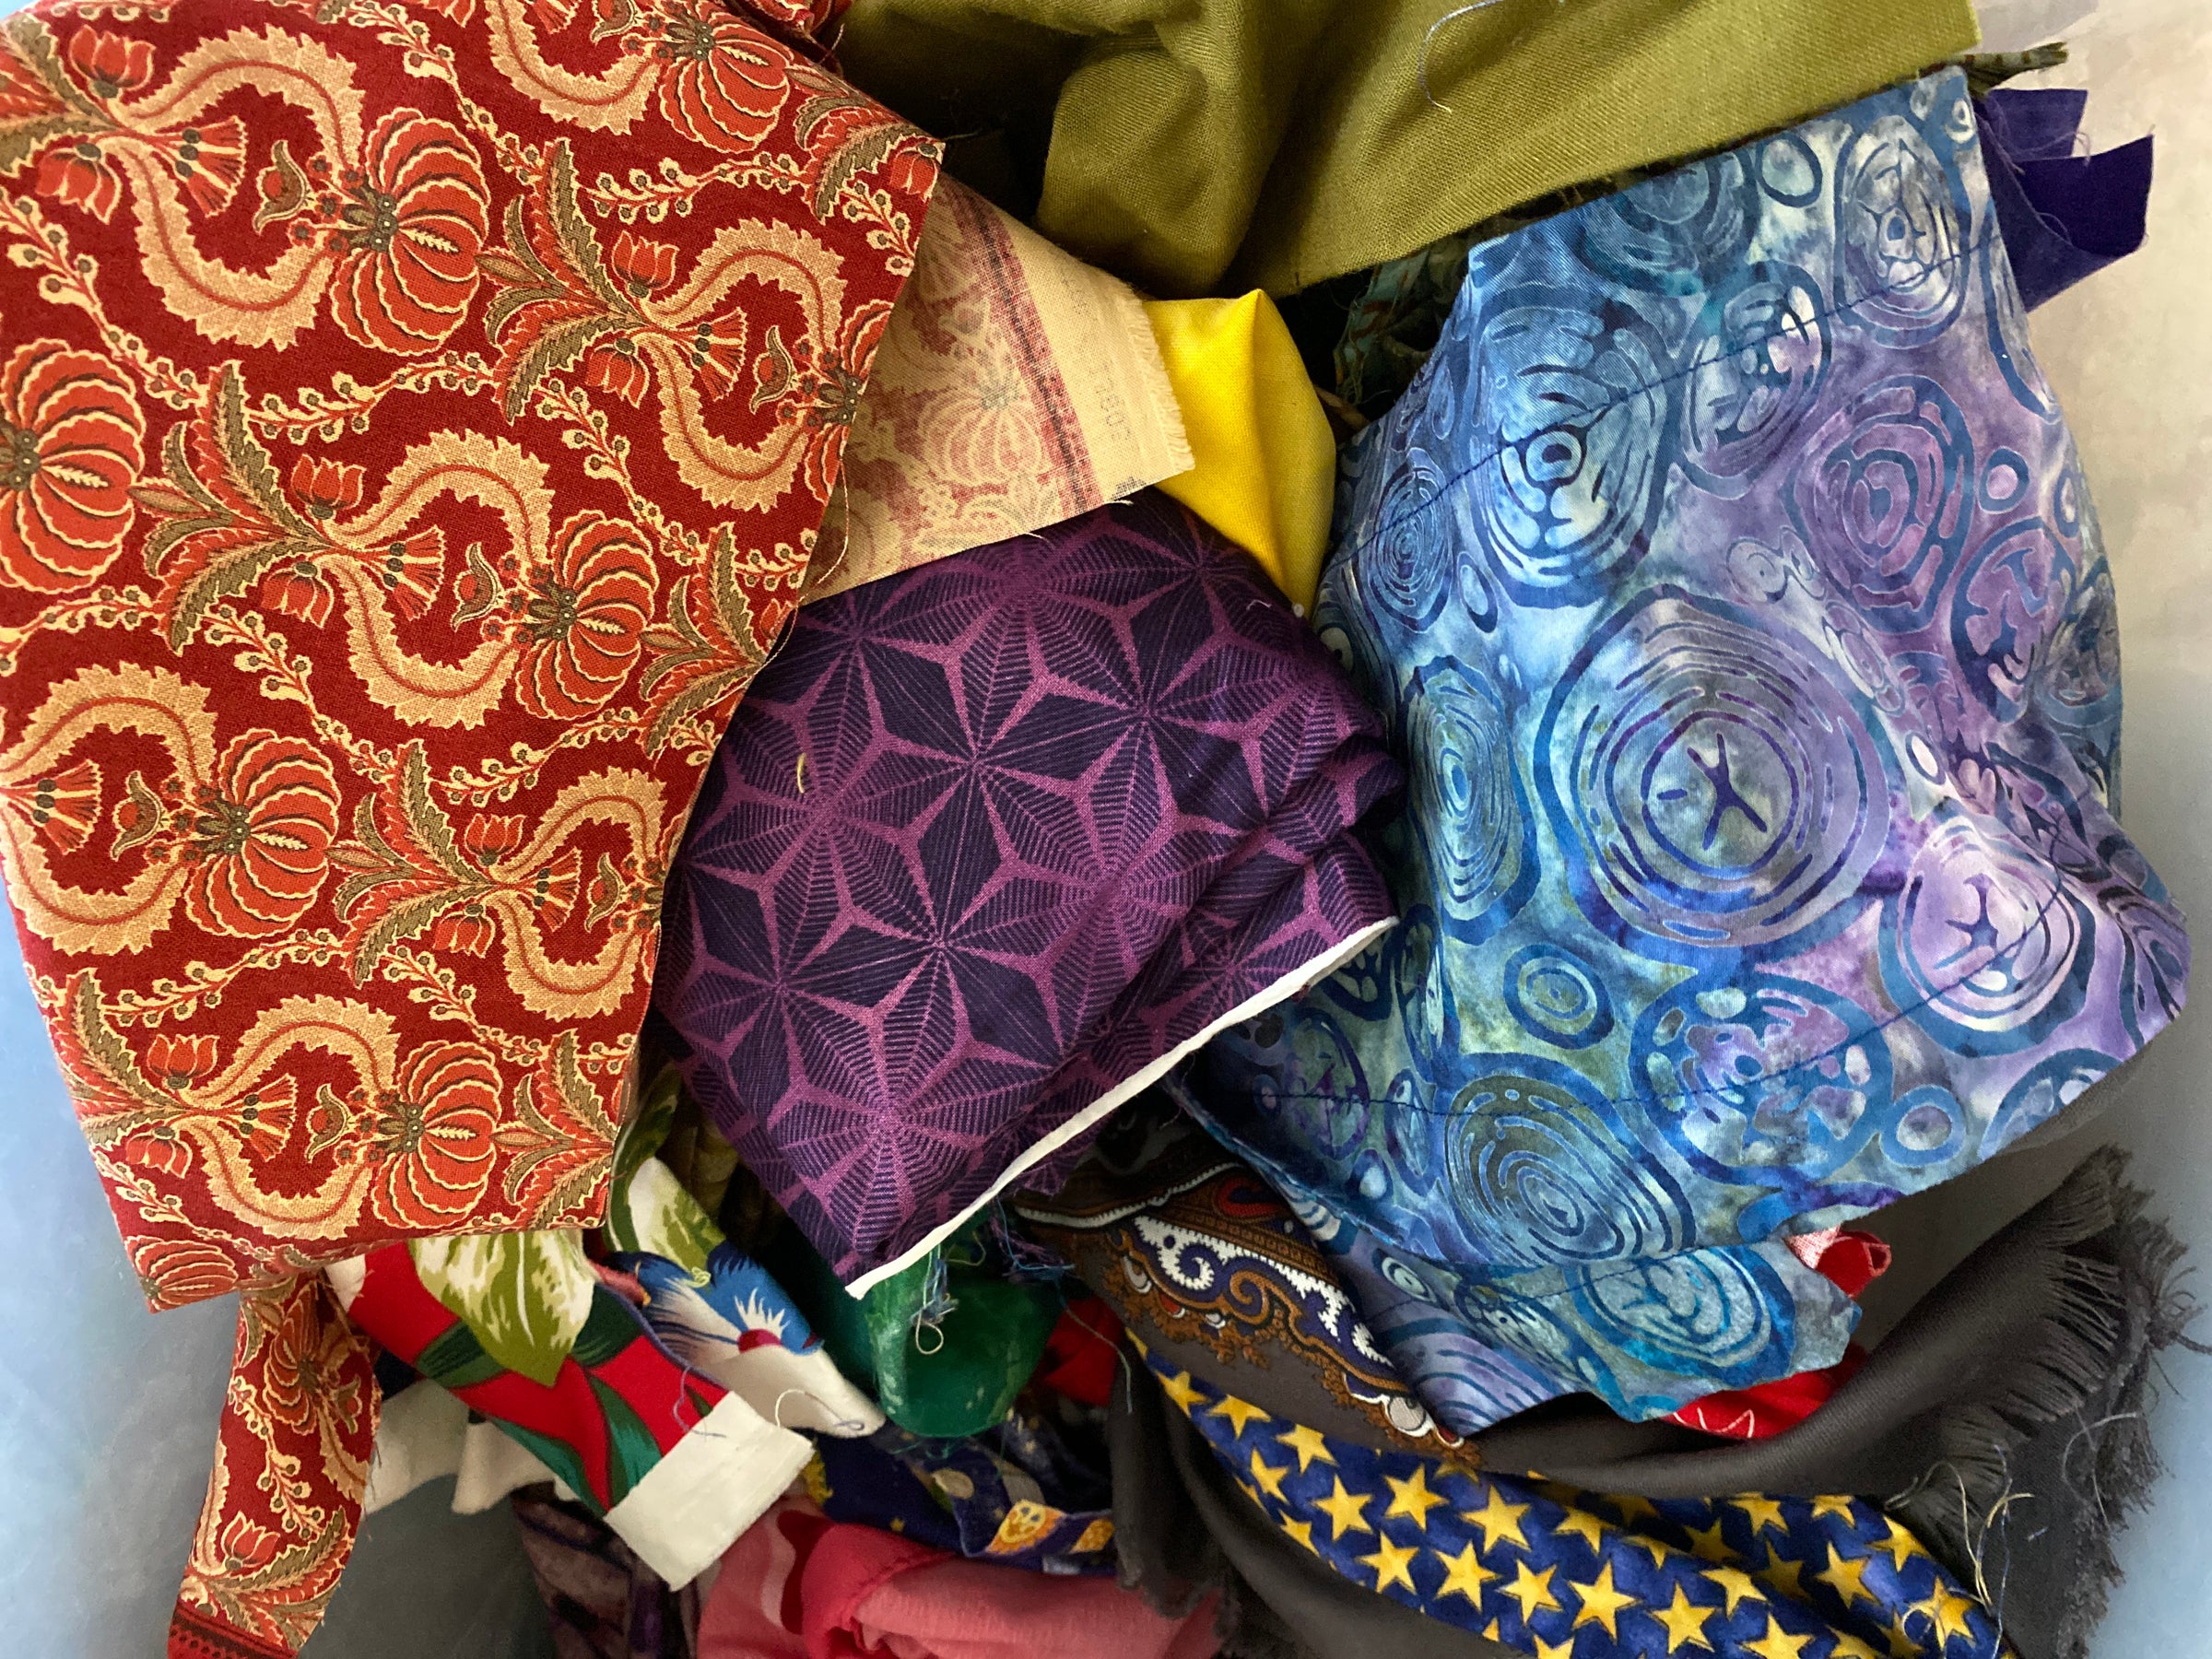 Gucci Donates Scrap Fabric to Migrant Dressmaking Shop